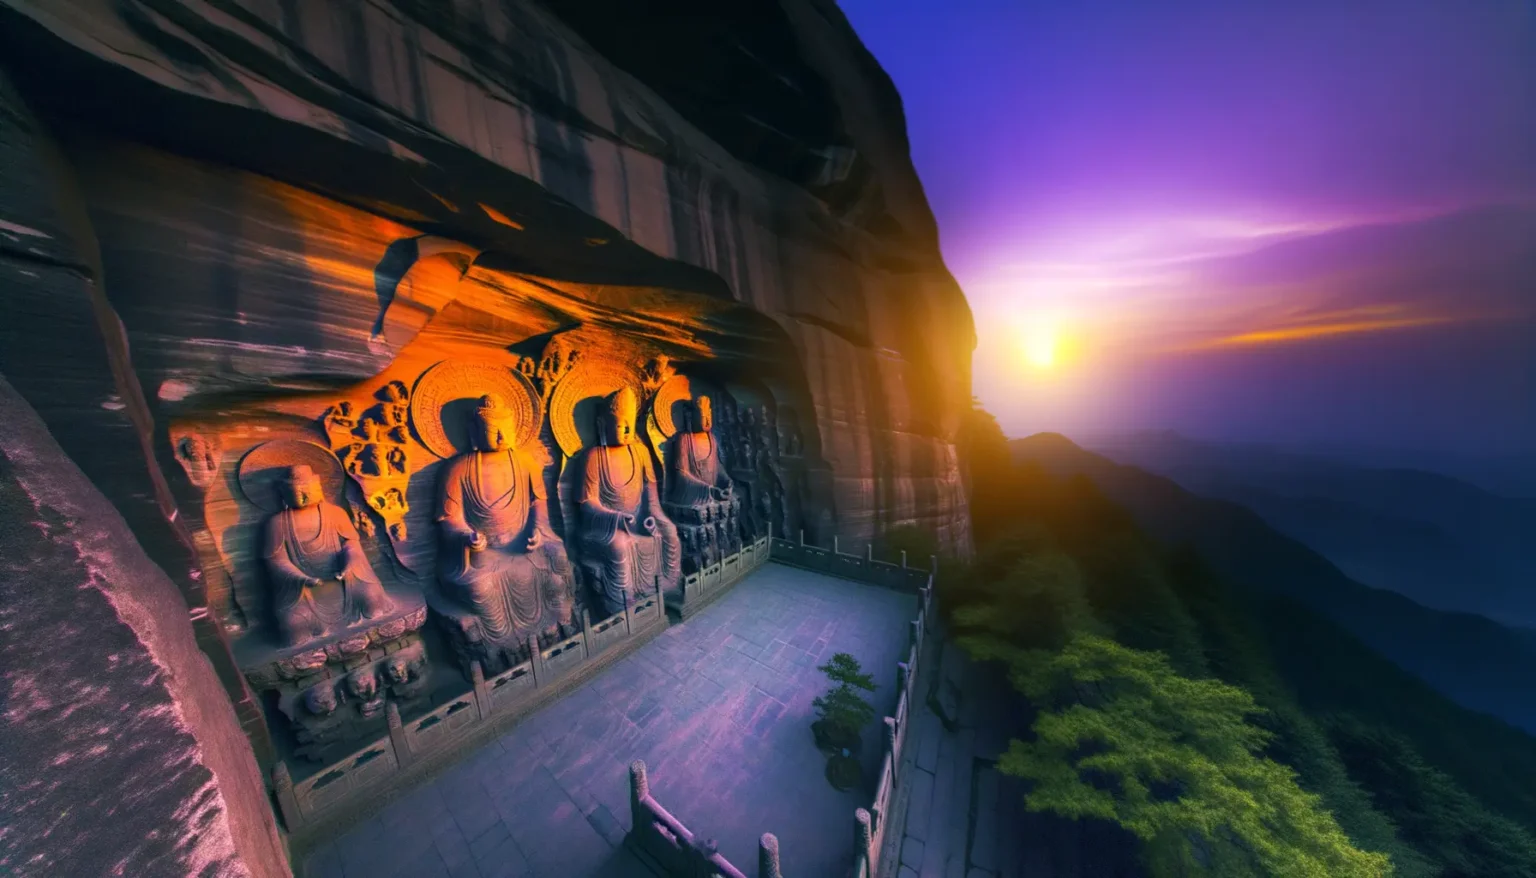 Eine Reihe großer, in Stein gehauener buddhistischer Figuren an einer Felswand mit Blick auf eine atemberaubende Berglandschaft während des Sonnenuntergangs, wobei die Farben des Himmels von warmem Gelborange zu violetten und blauen Tönen übergehen.